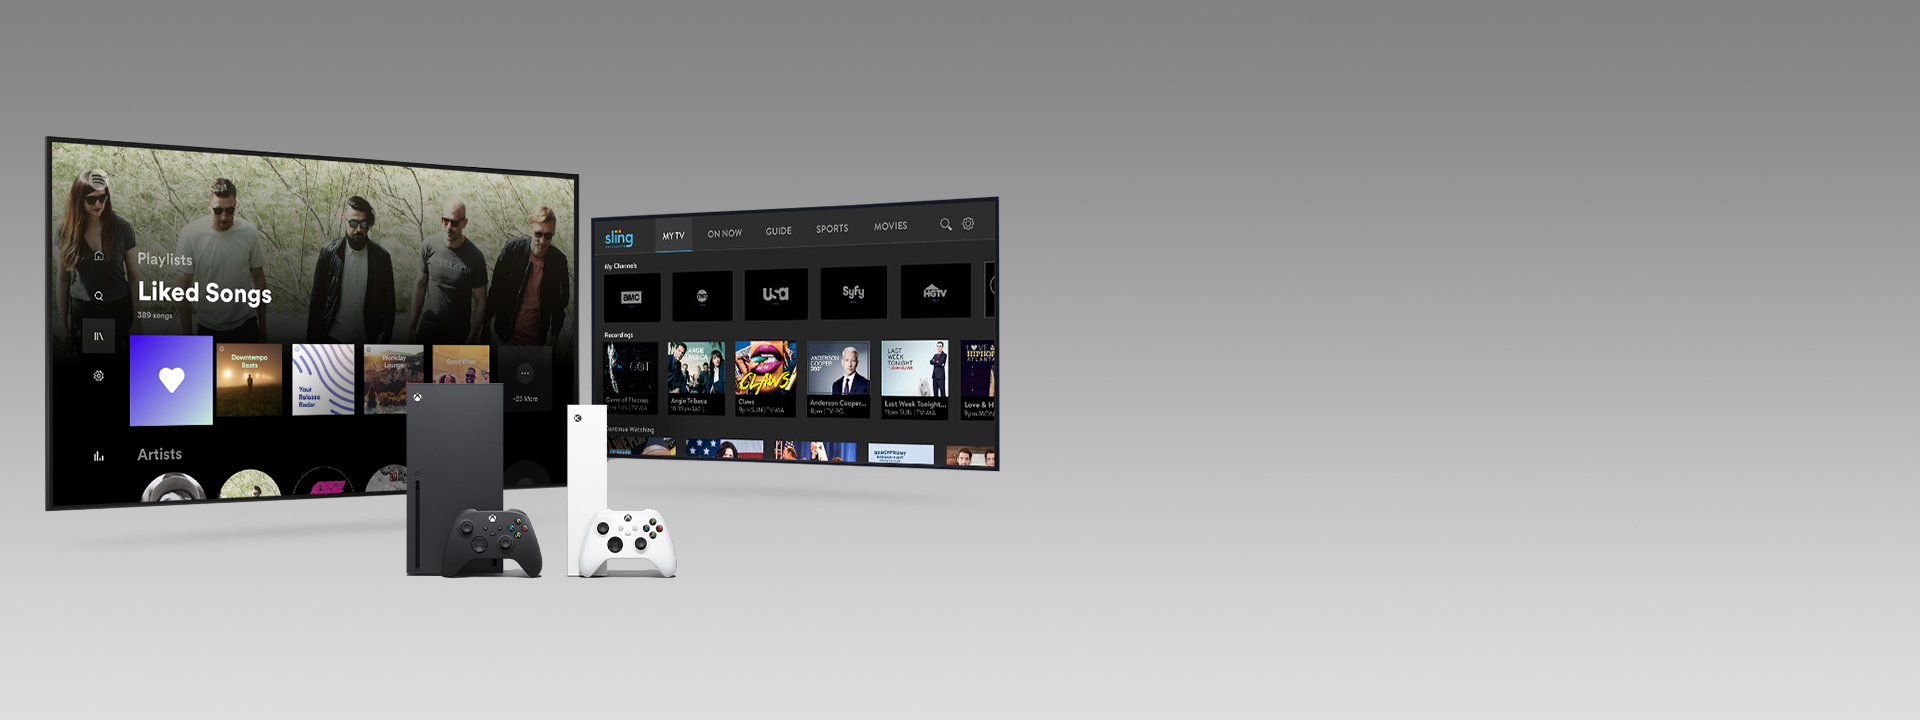 Konzoly Xbox Series X a Series S s ovládačmi pred dvoma televíznymi obrazovkami s používateľskými rozhraniami aplikácií.